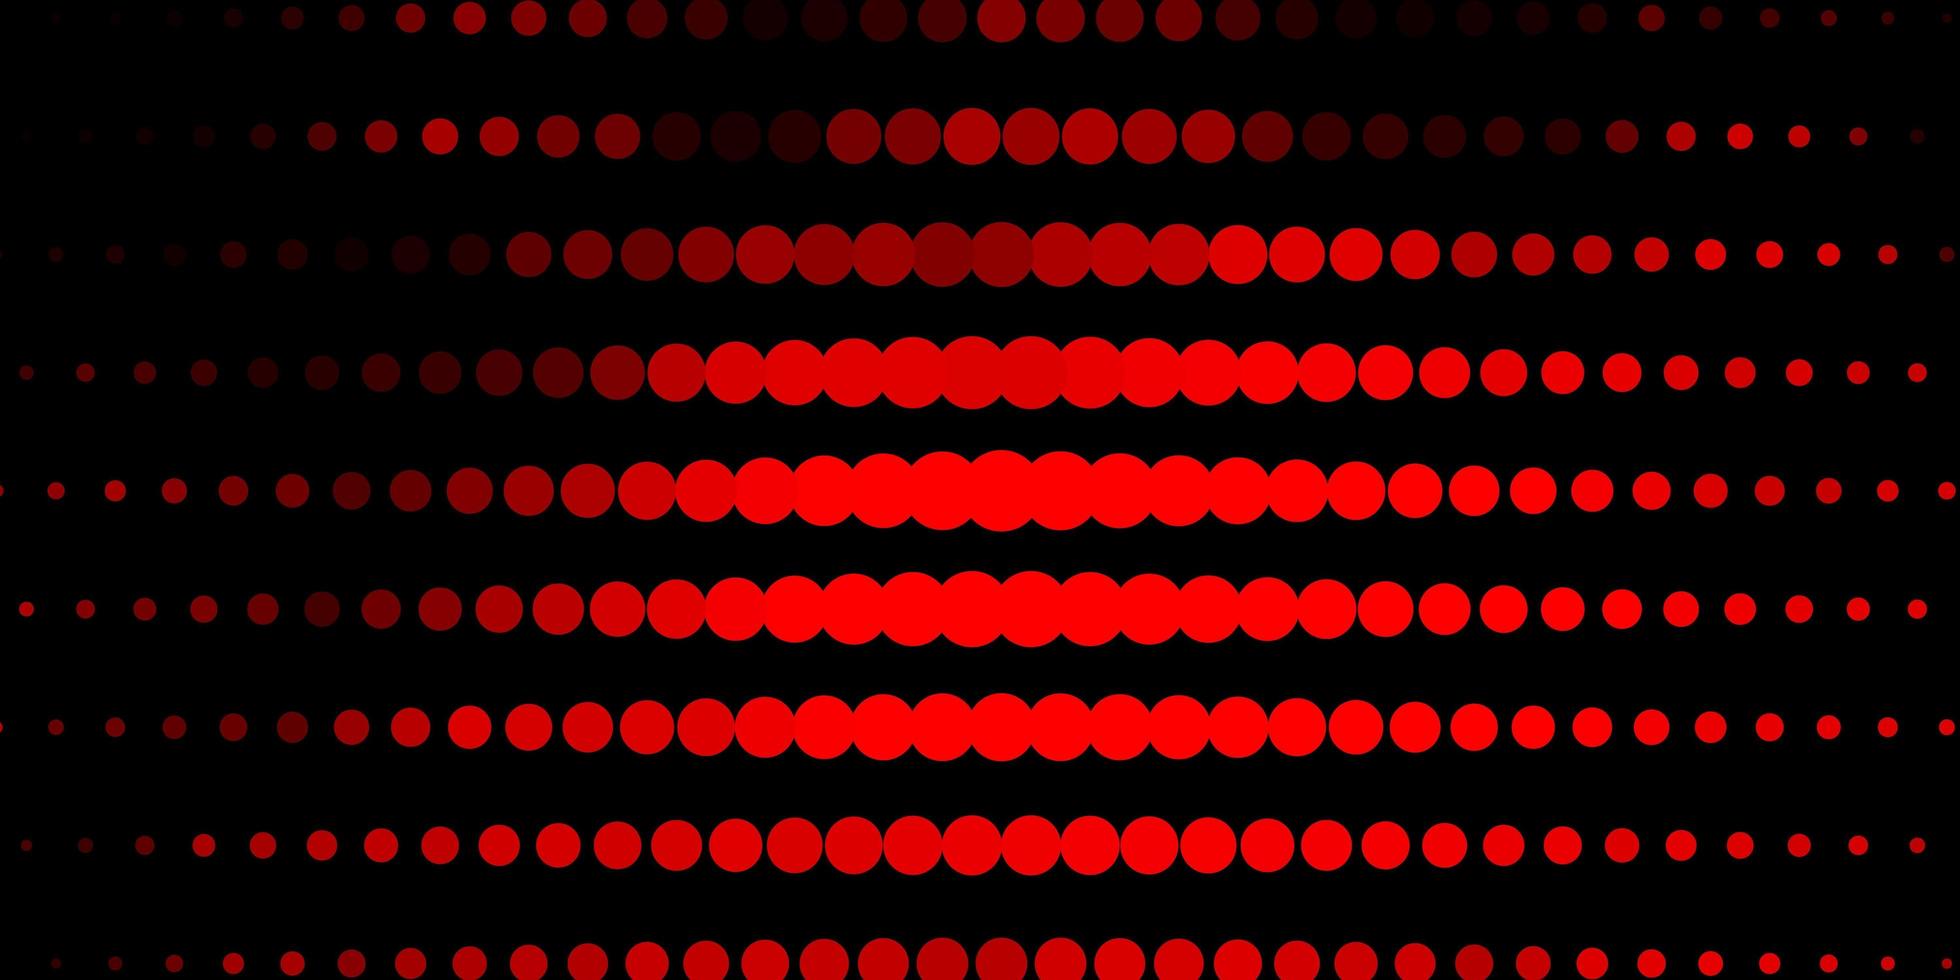 Fondo de vector rojo oscuro con círculos. Ilustración abstracta con manchas de colores en el estilo de la naturaleza. patrón para sitios web, páginas de destino.